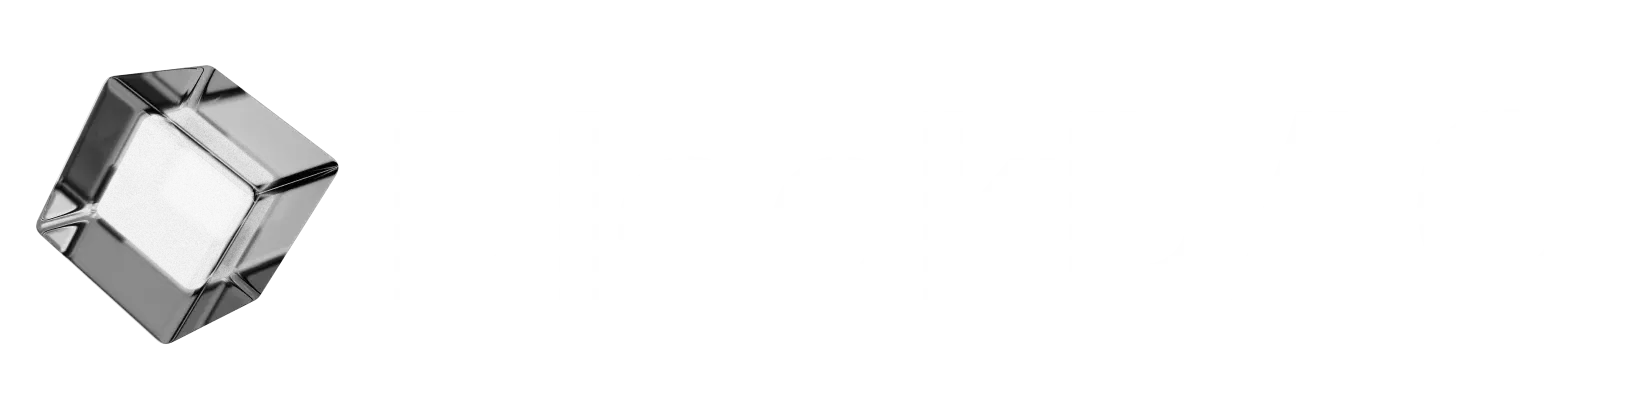 BlockDAG Logo